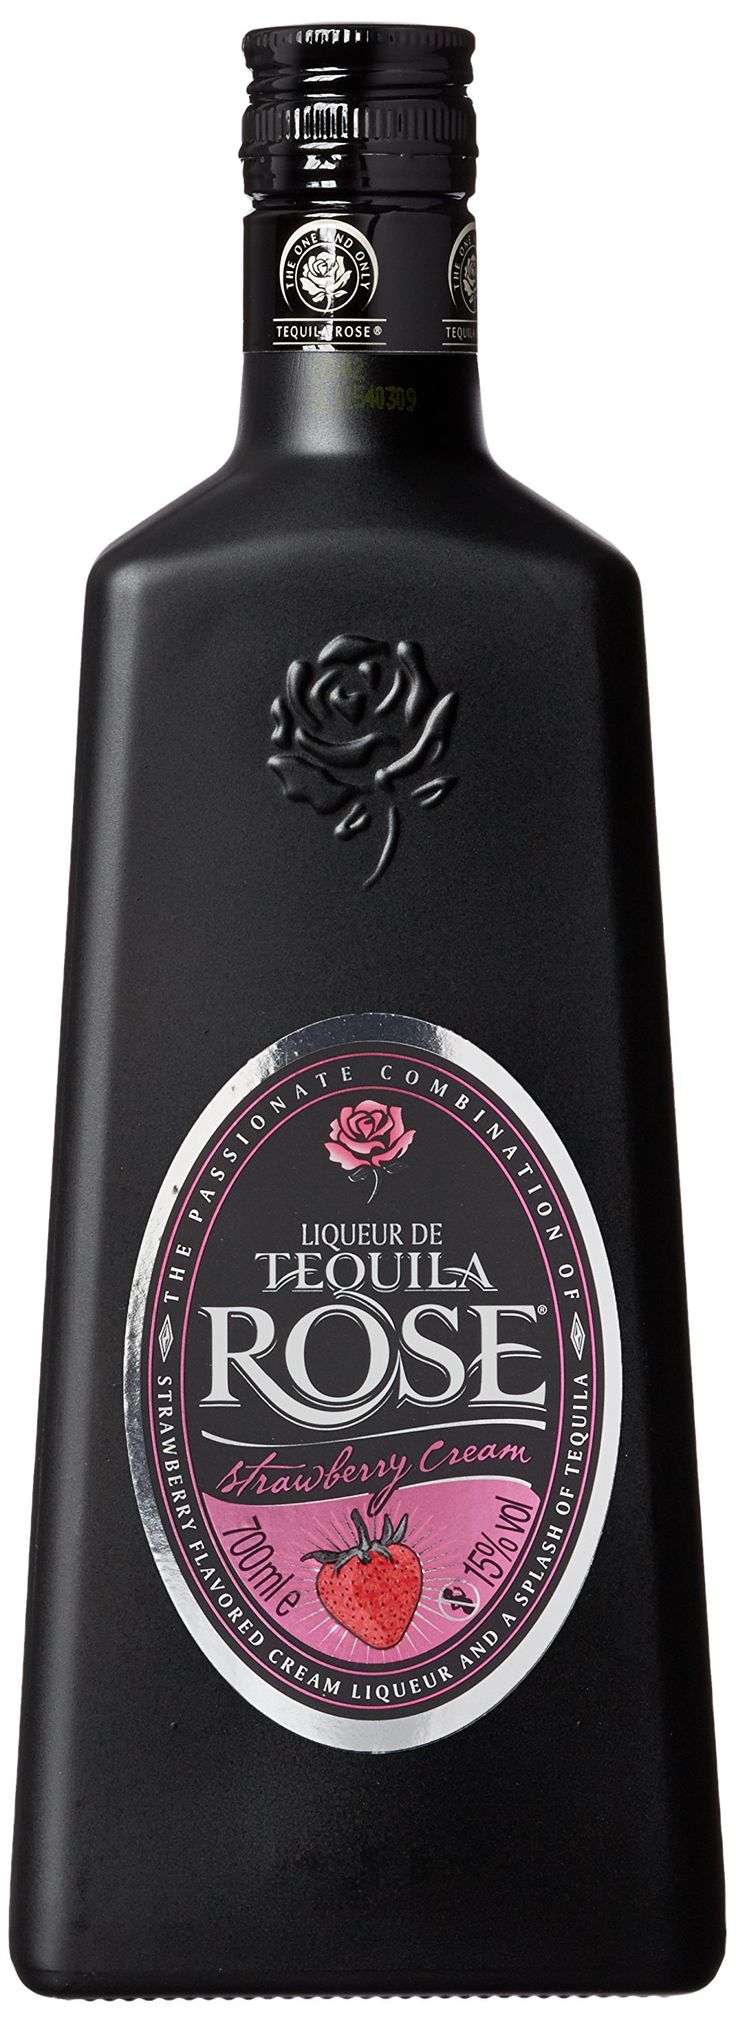 Ликер темный. Tequila Rose Strawberry Cream. Tequila Rose Strawberry Cream, 0.7. Ликер в черной бутылке. Текила ликер.